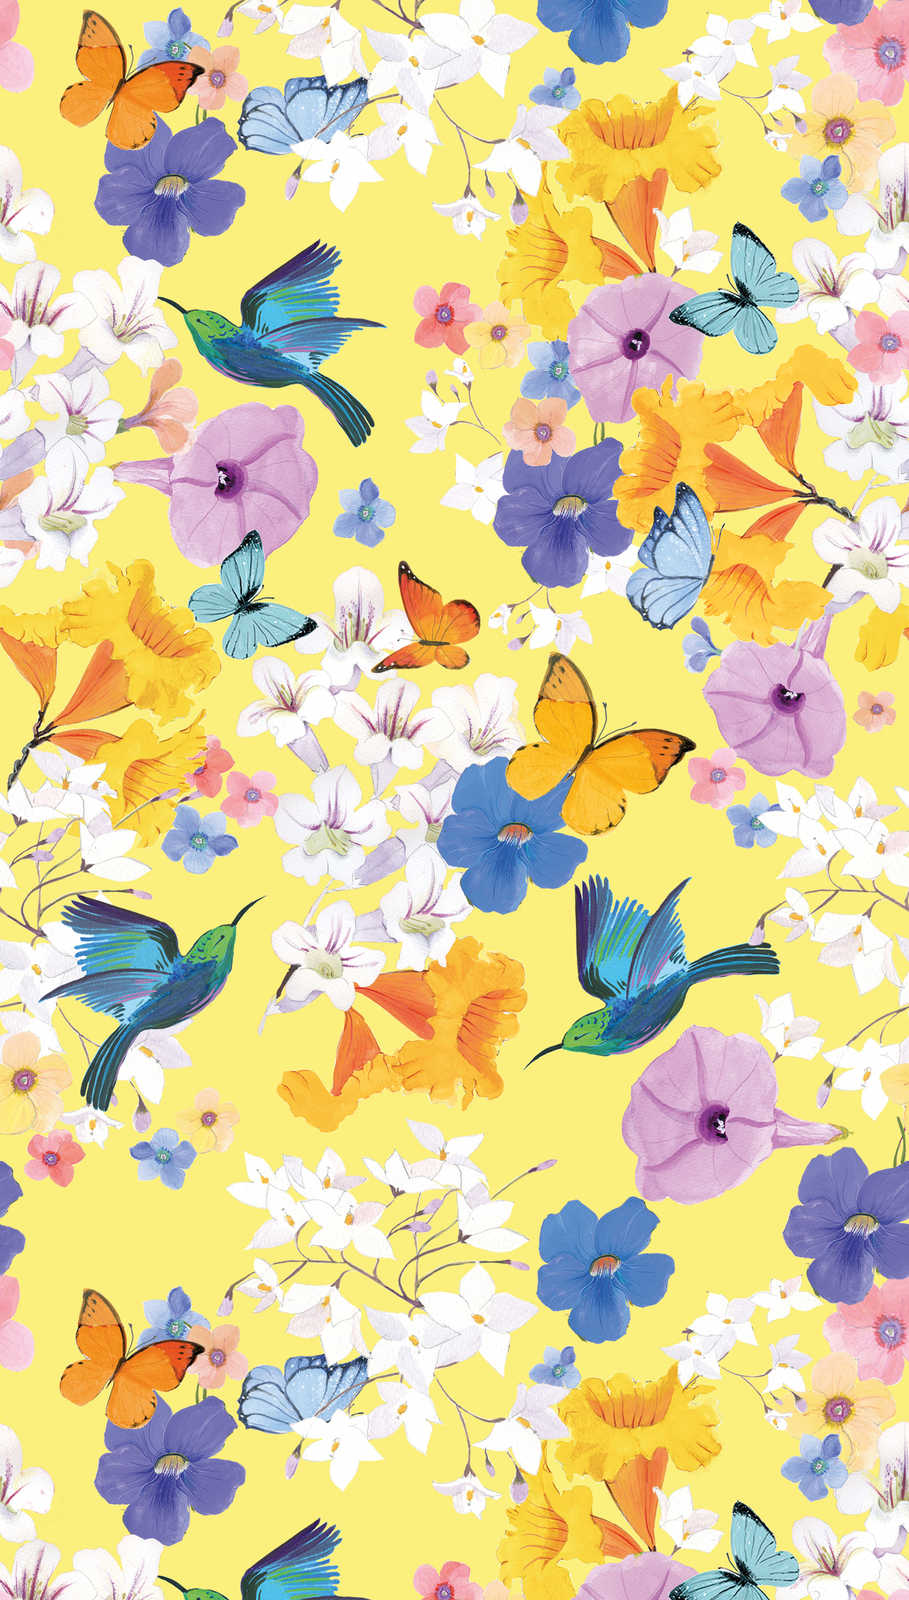             Carta da parati floreale con farfalle e uccelli - colorata, gialla, blu
        